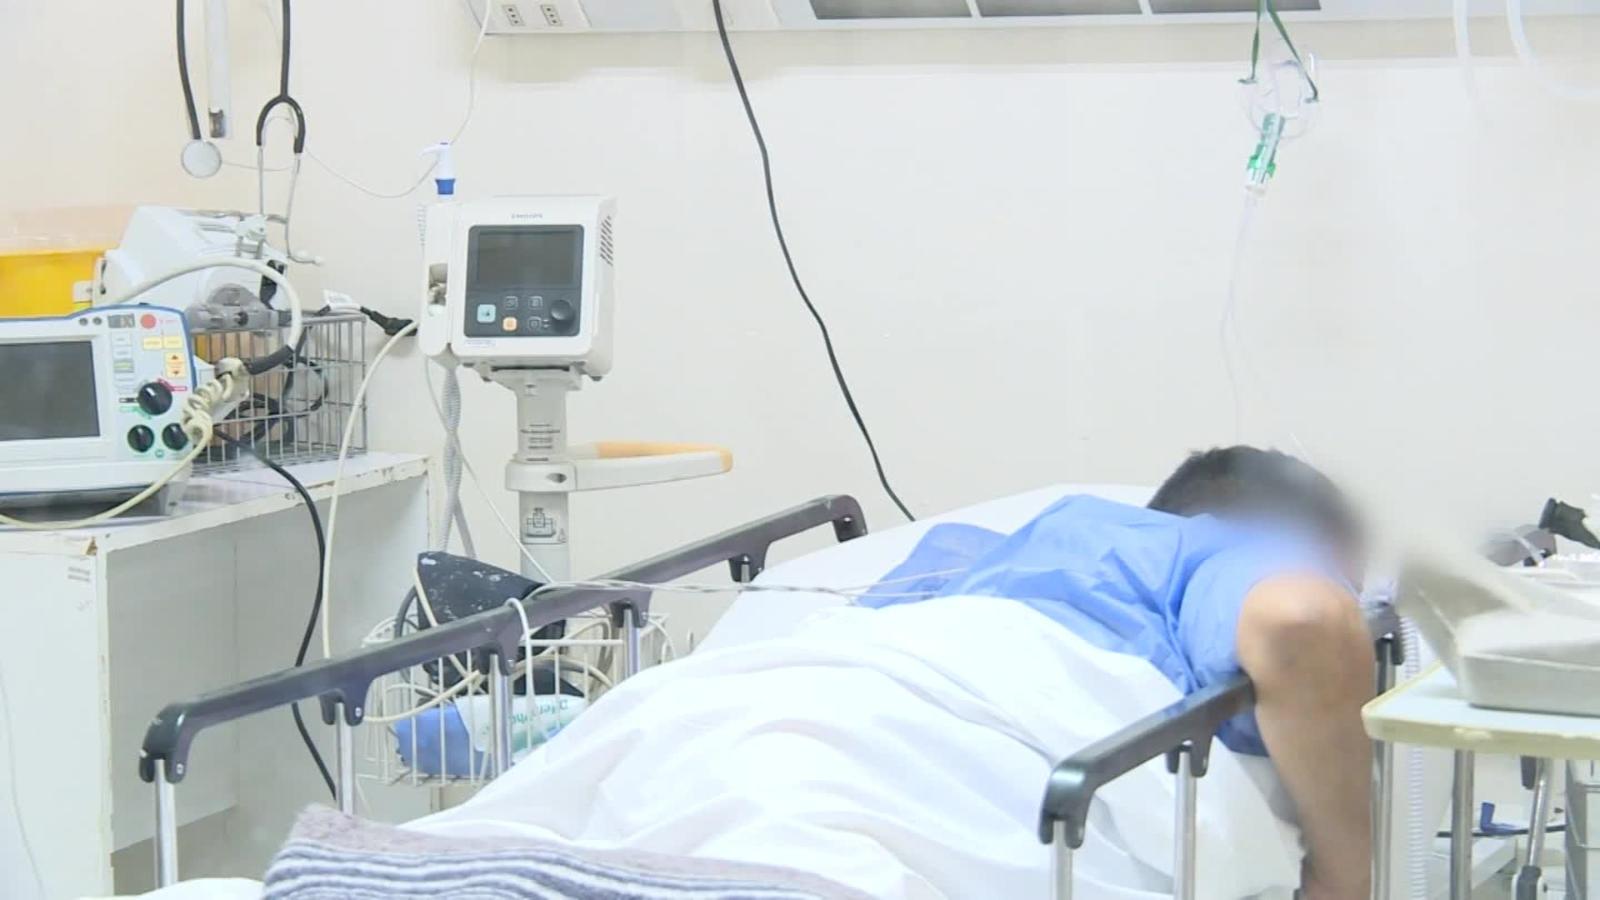 Enfermos de covid-19 hacen fila para ventilación mecánica en este hospital  en Chile, según enfermera | Video | CNN